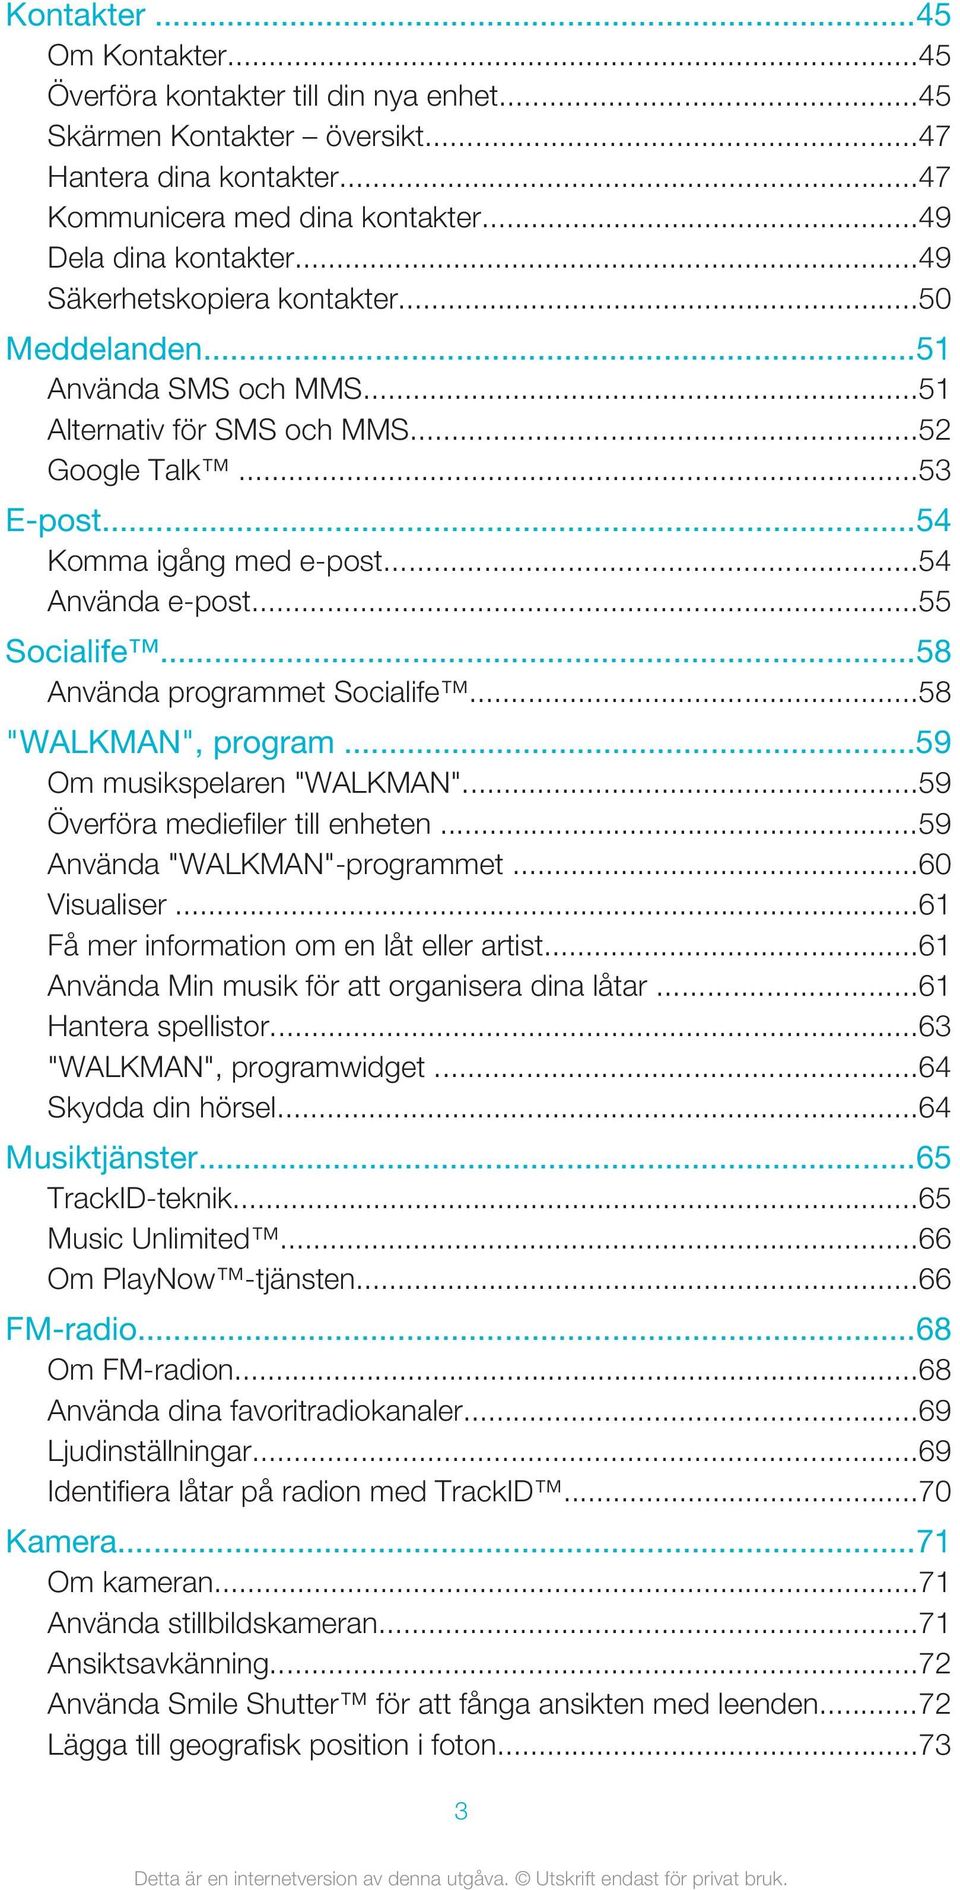 ..58 Använda programmet Socialife...58 "WALKMAN", program...59 Om musikspelaren "WALKMAN"...59 Överföra mediefiler till enheten...59 Använda "WALKMAN"-programmet...60 Visualiser.